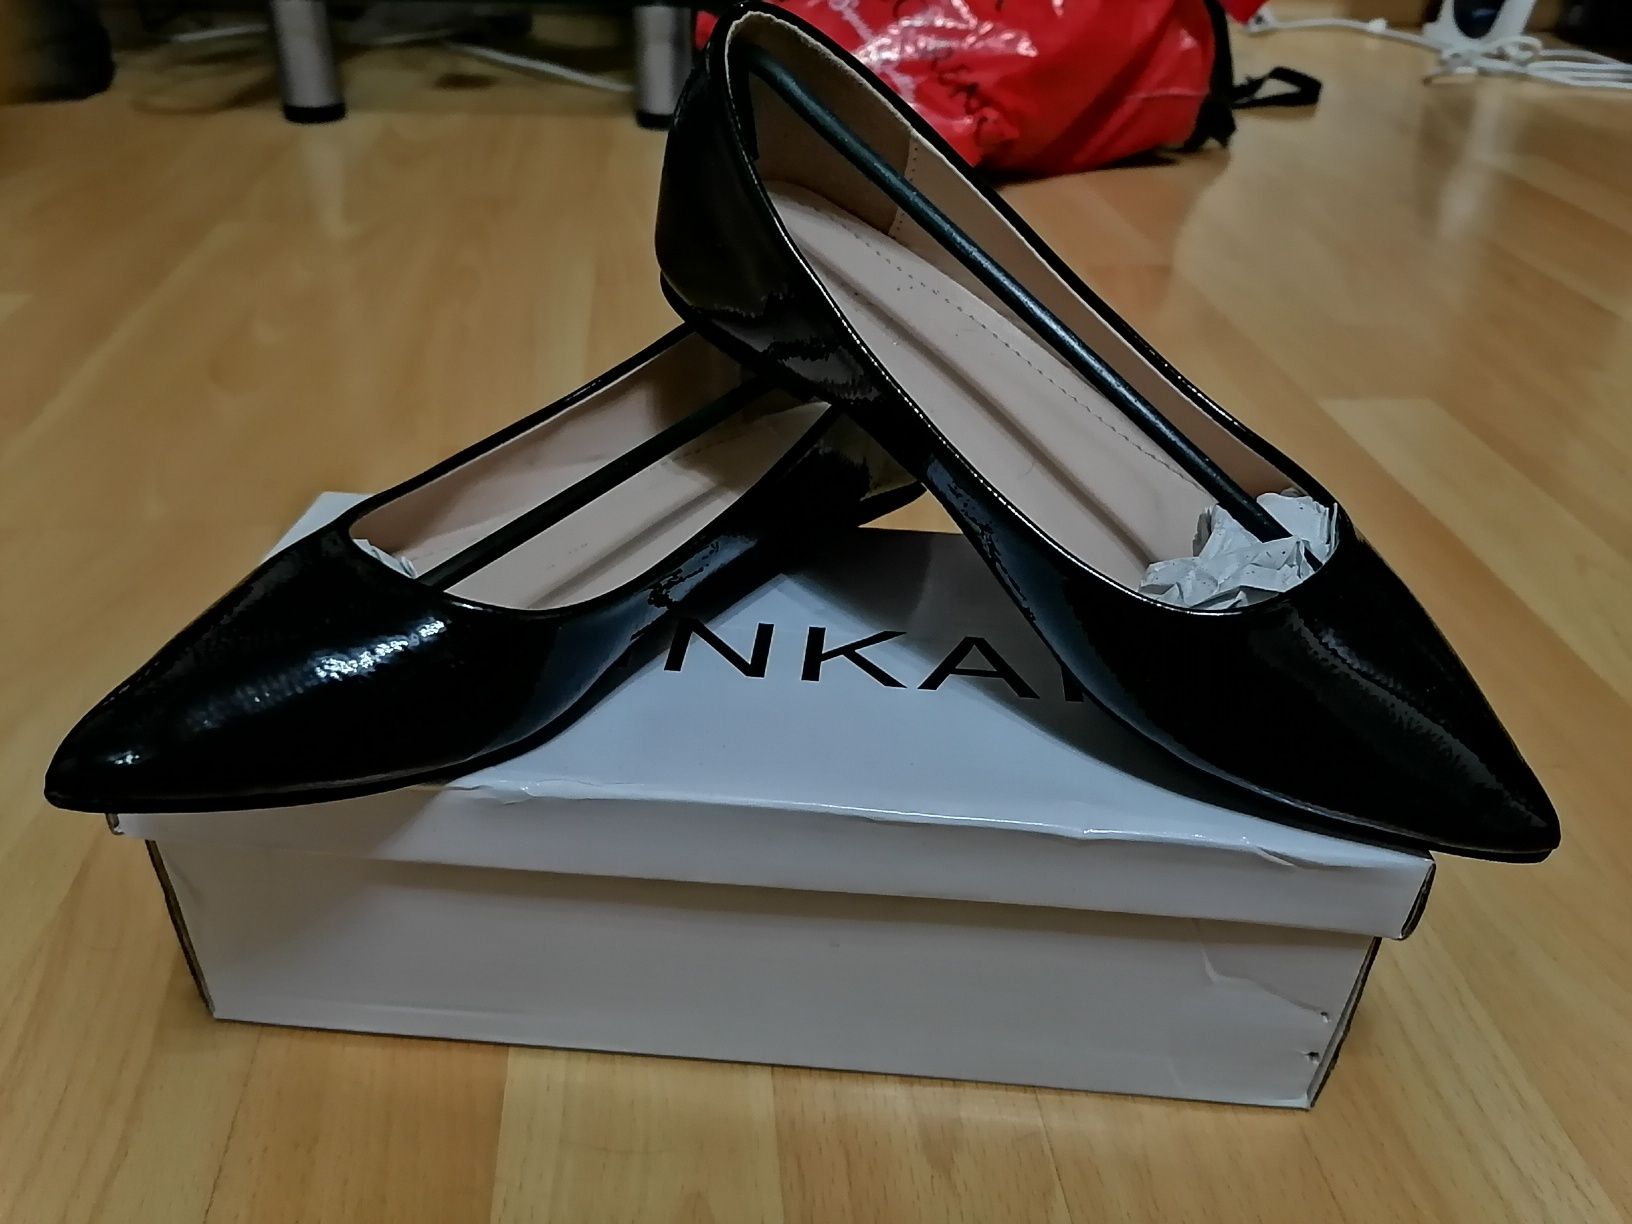 Женские чёрные лаковые балетки лоферы туфли, бренд Pinkai, оригинал